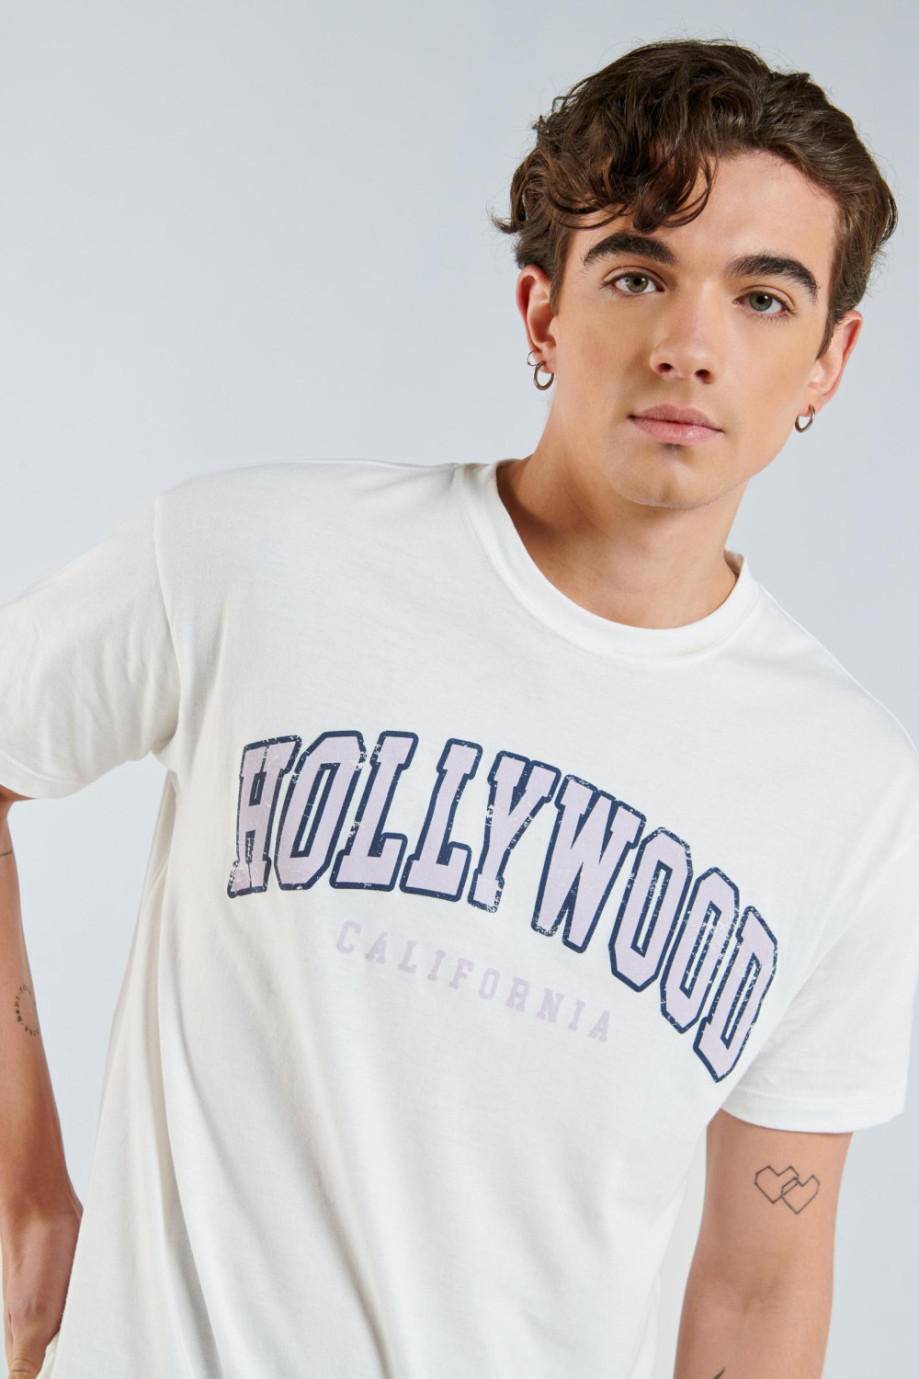 Camiseta crema clara con diseño college de Hollywood y manga corta